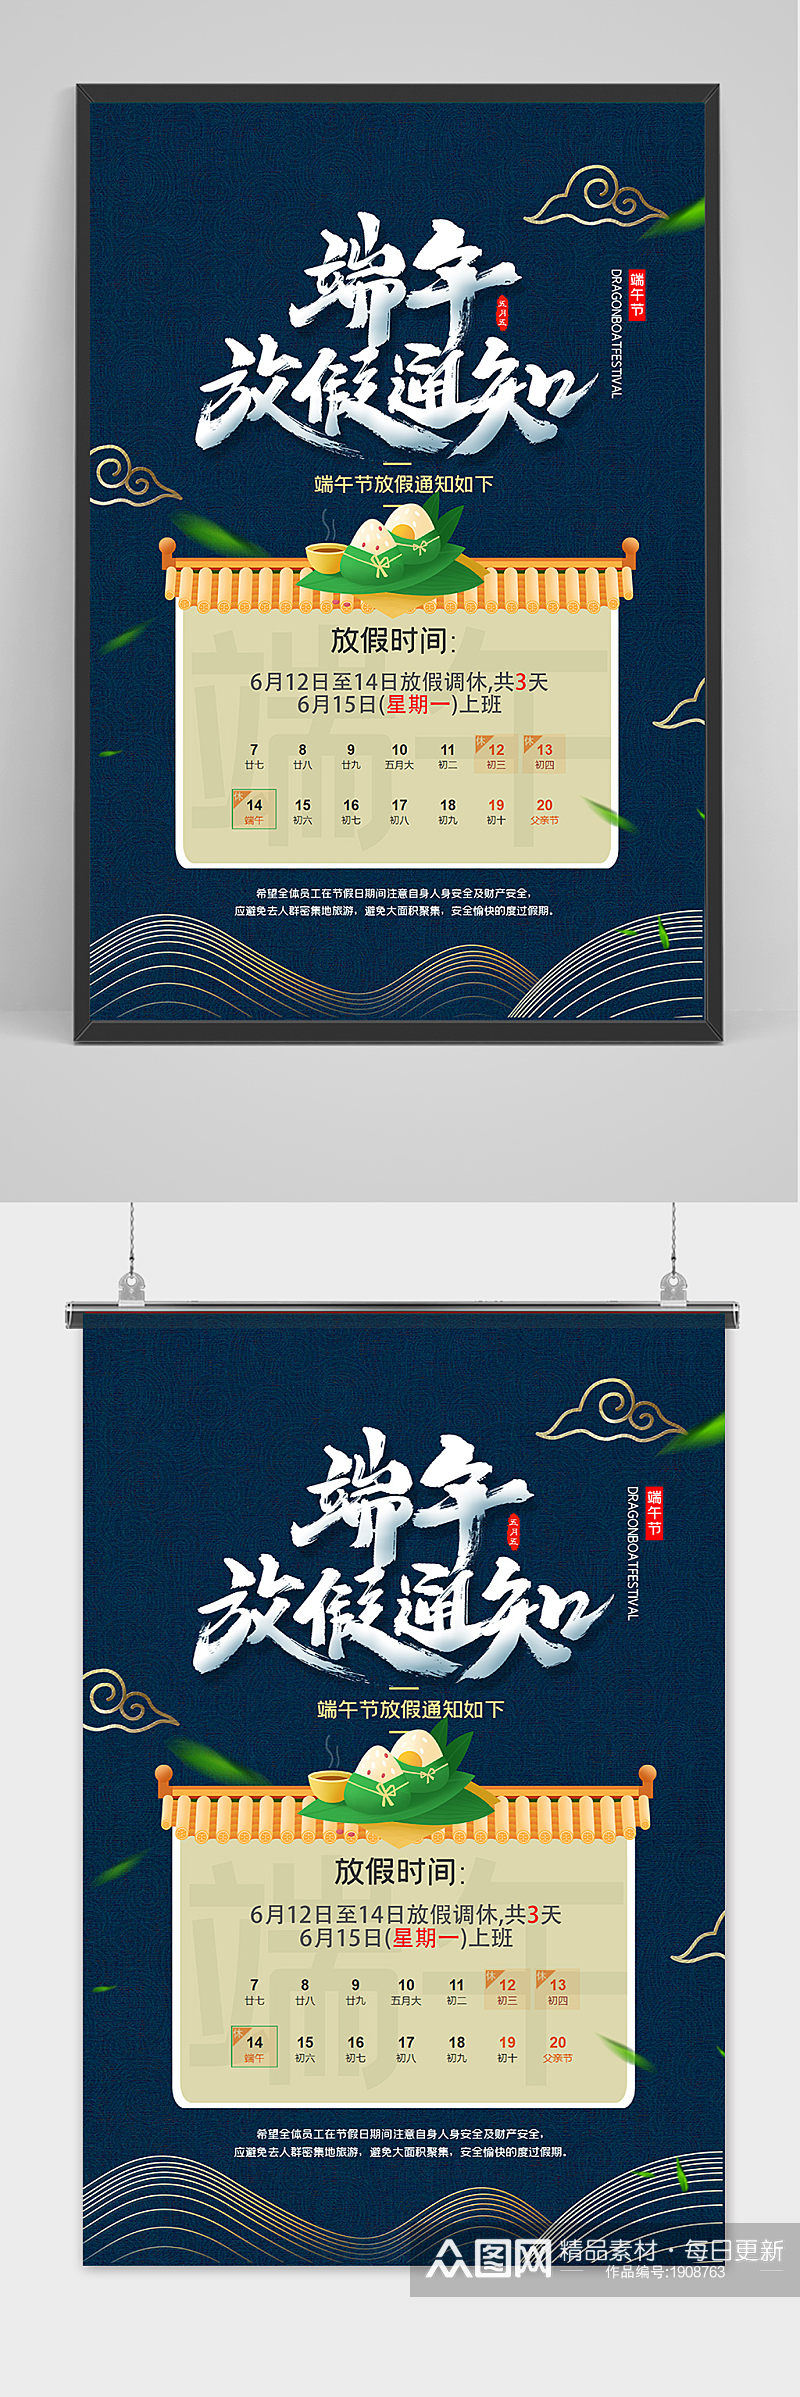 绿色清爽中国风端午节放假通知海报素材